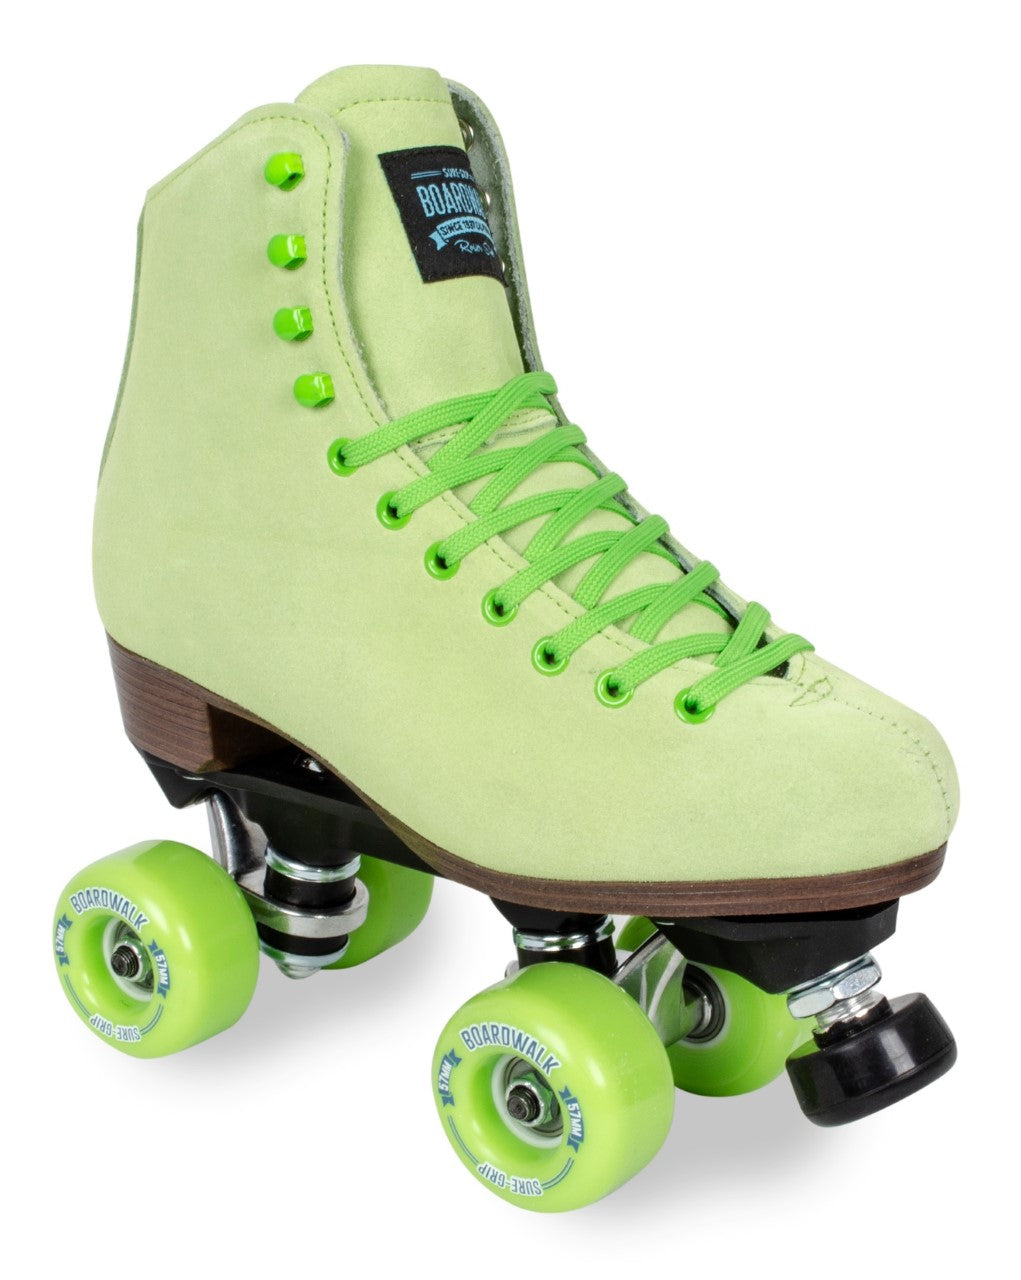 Sure Grip Boardwalk Green Suede Roller Skates, Skate Shop Near Me, Intuition Skate Shop